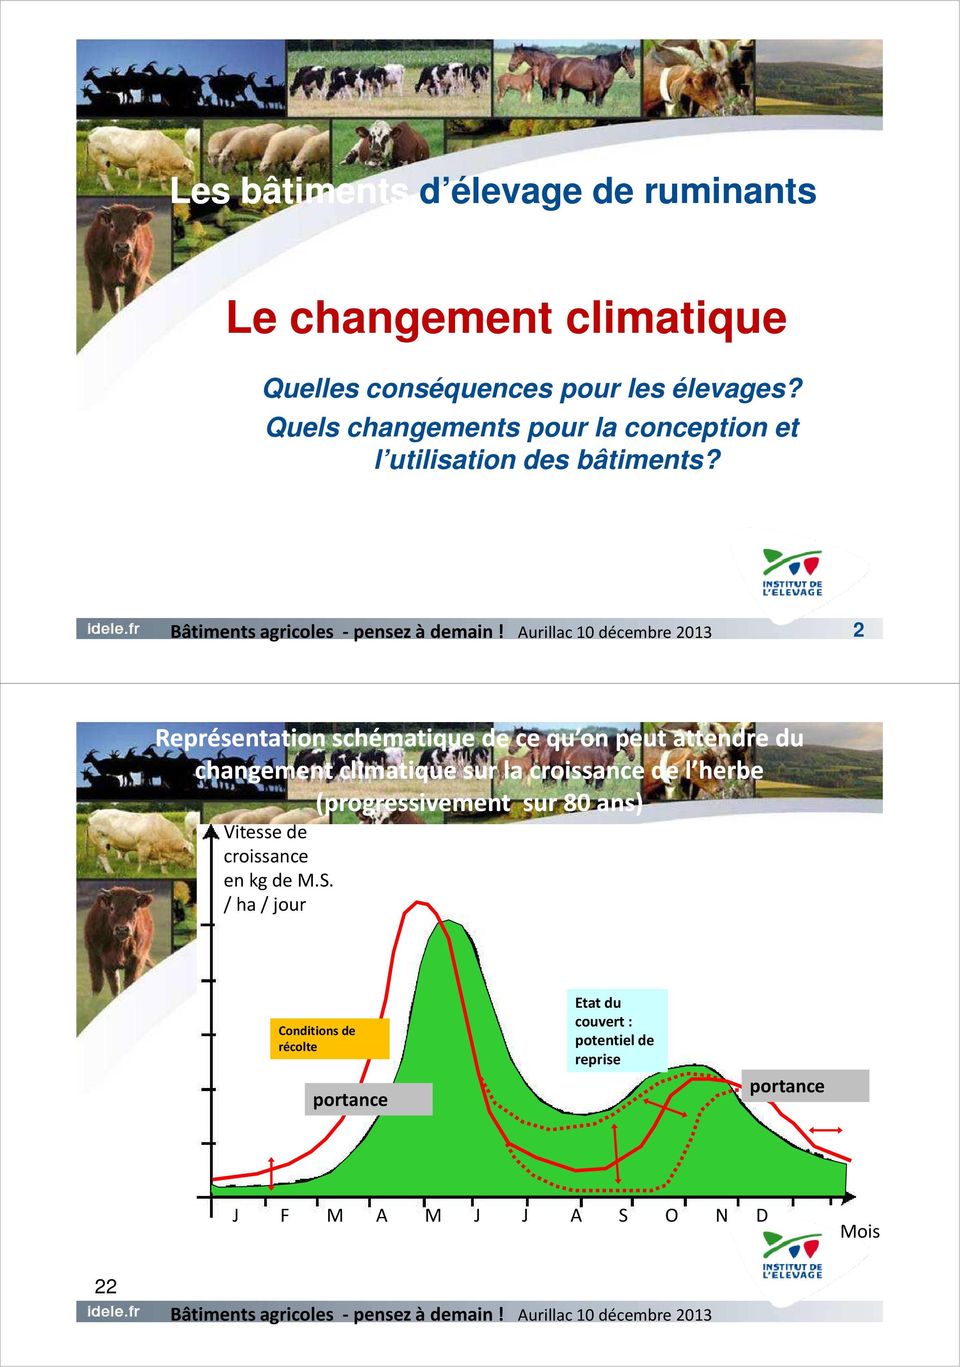 2 1 Représentation schématique de ce qu on peut attendre du changement climatique sur la croissance de l herbe